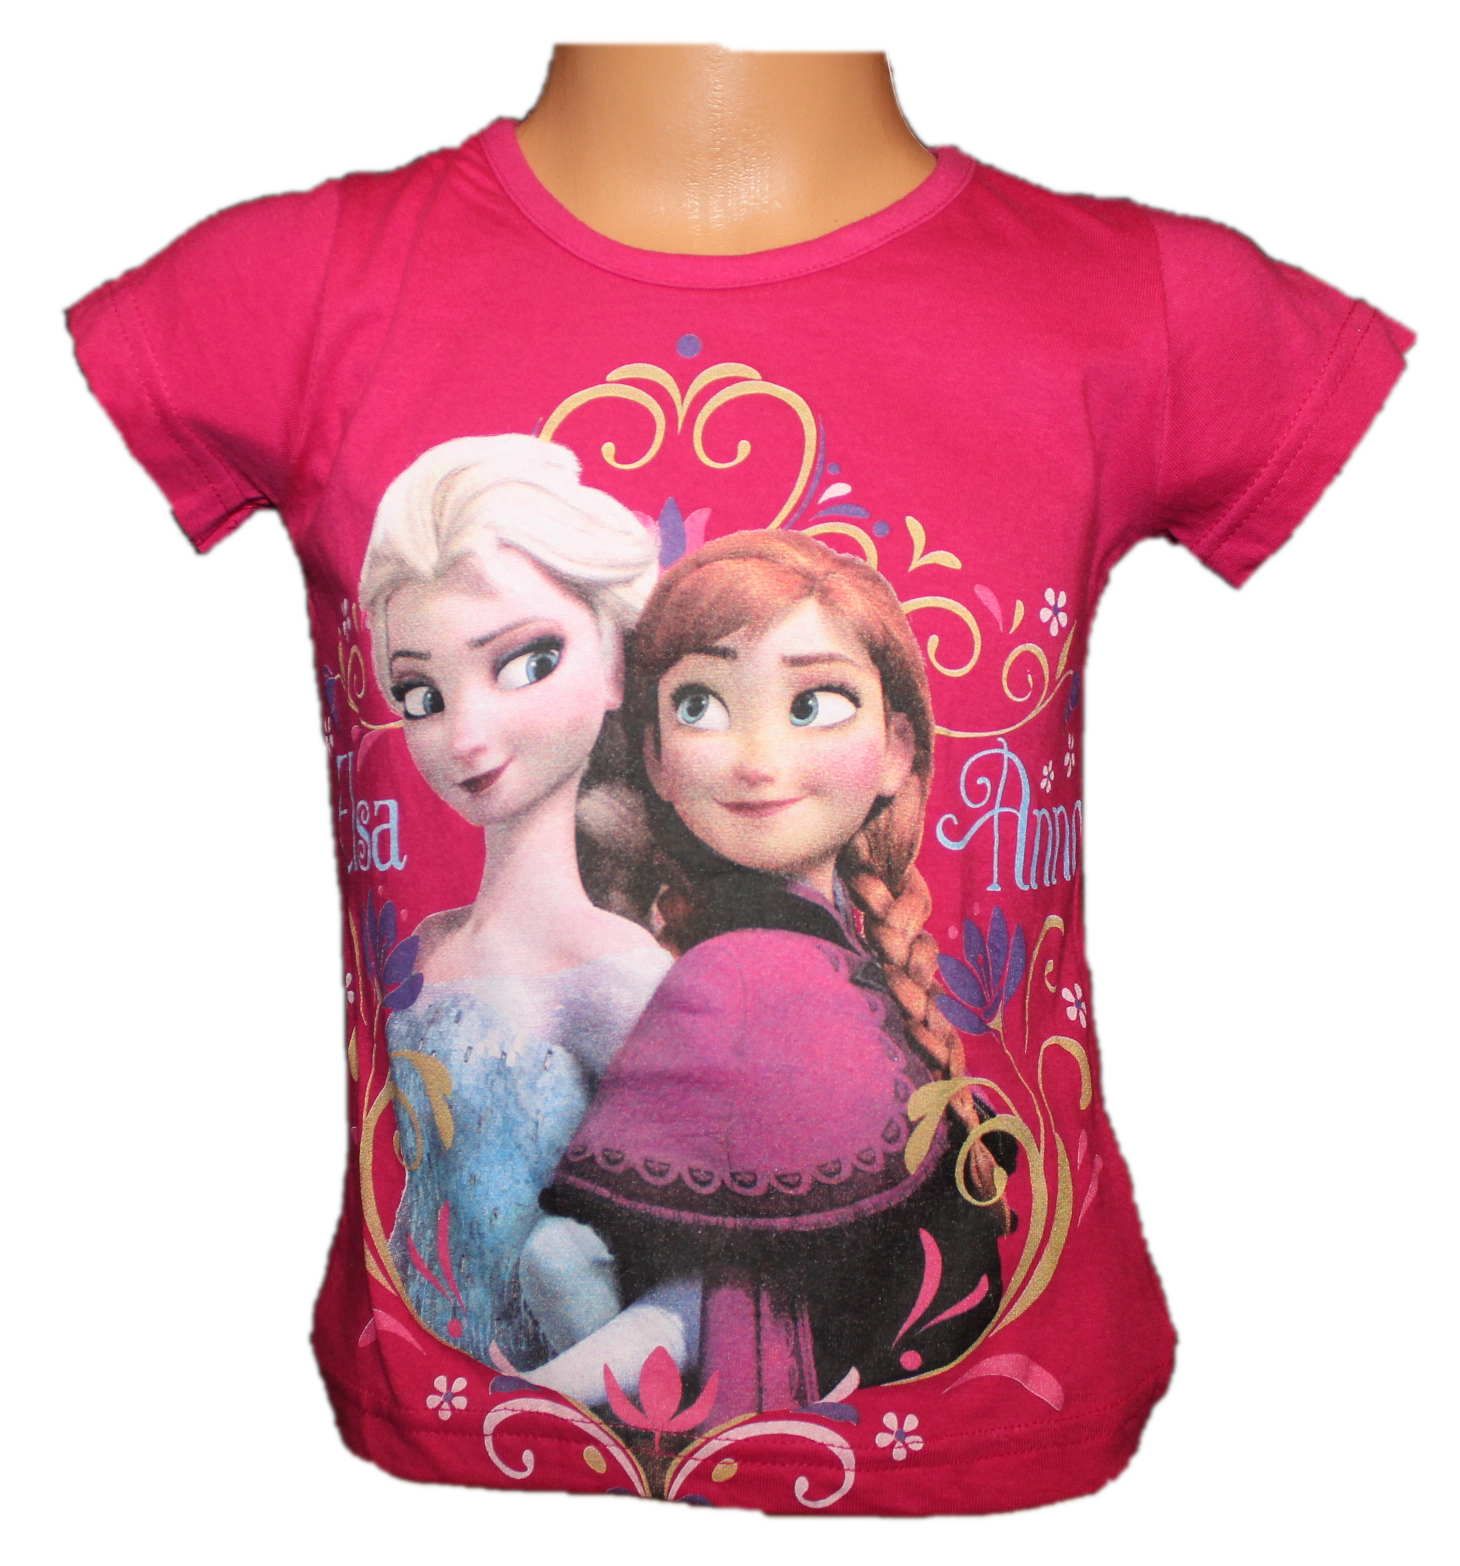 Dětské tričko Frozen, dívčí tričko frozen, disnesy tričko, tričko ledové království, růžové tričko frozen Disney